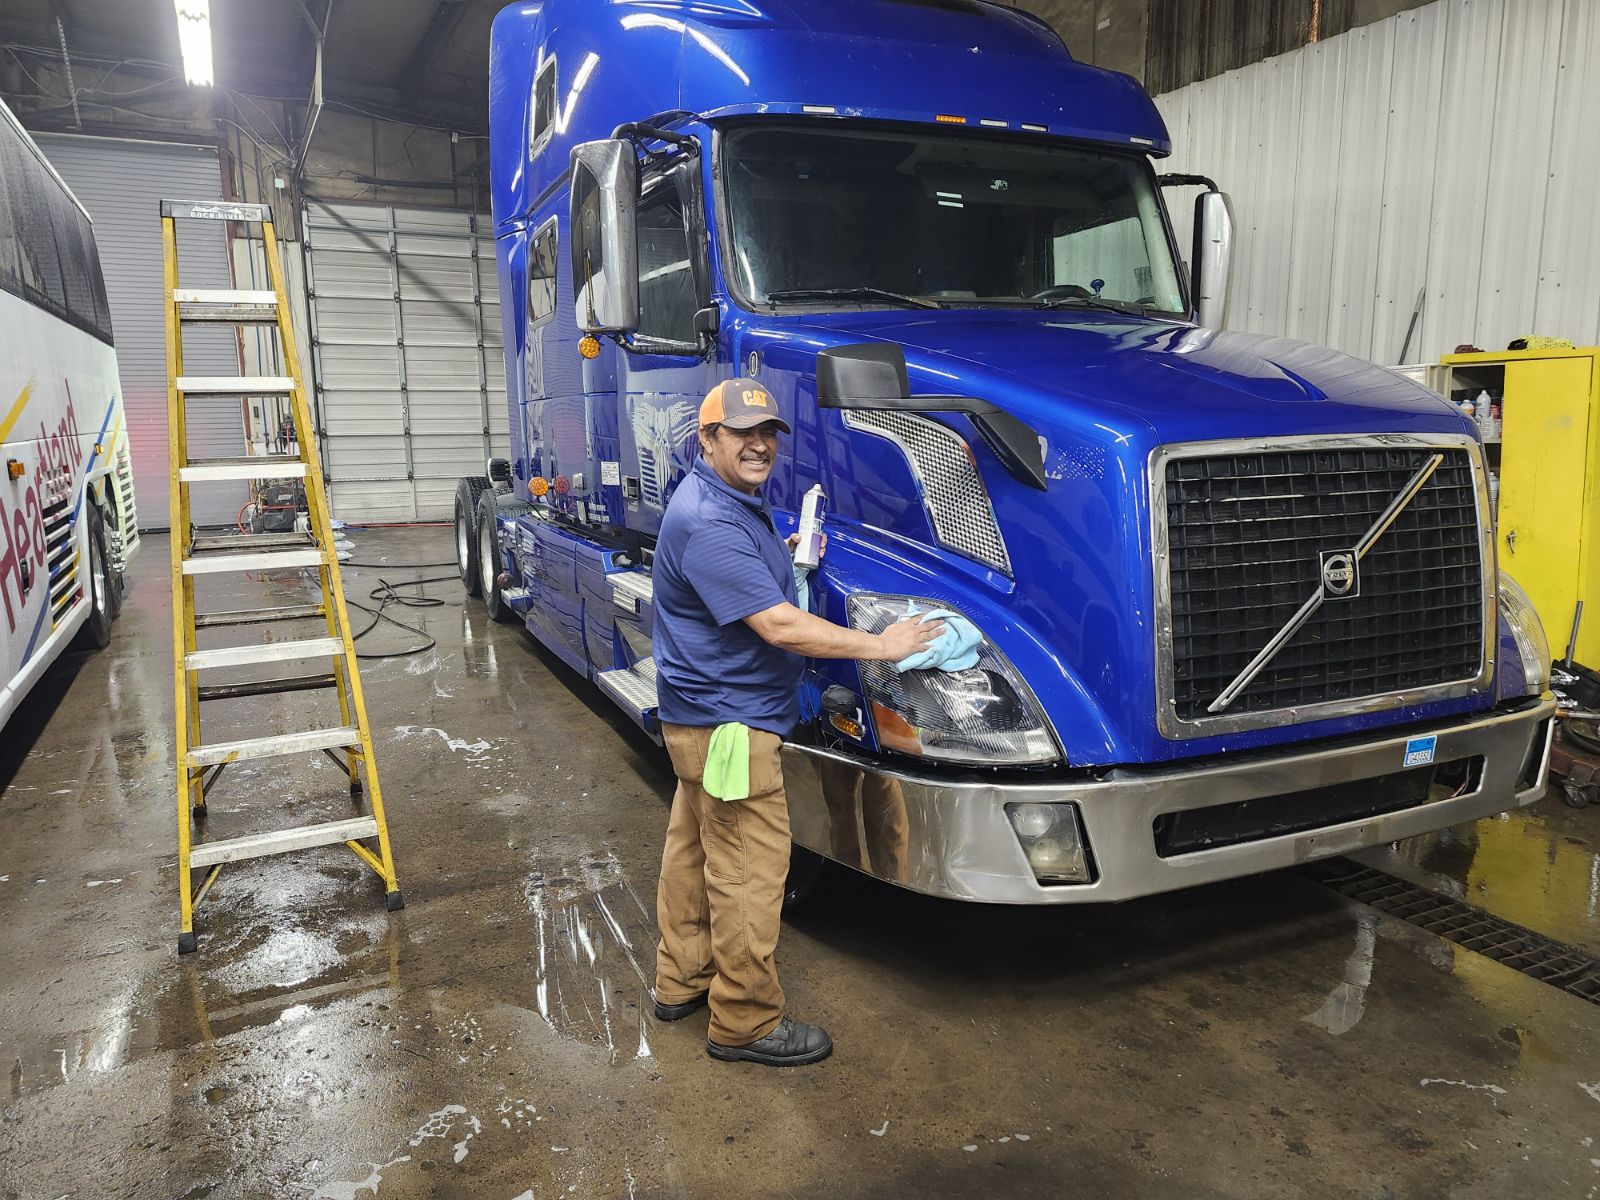 Heartland Diesel Repair & Truck Wash